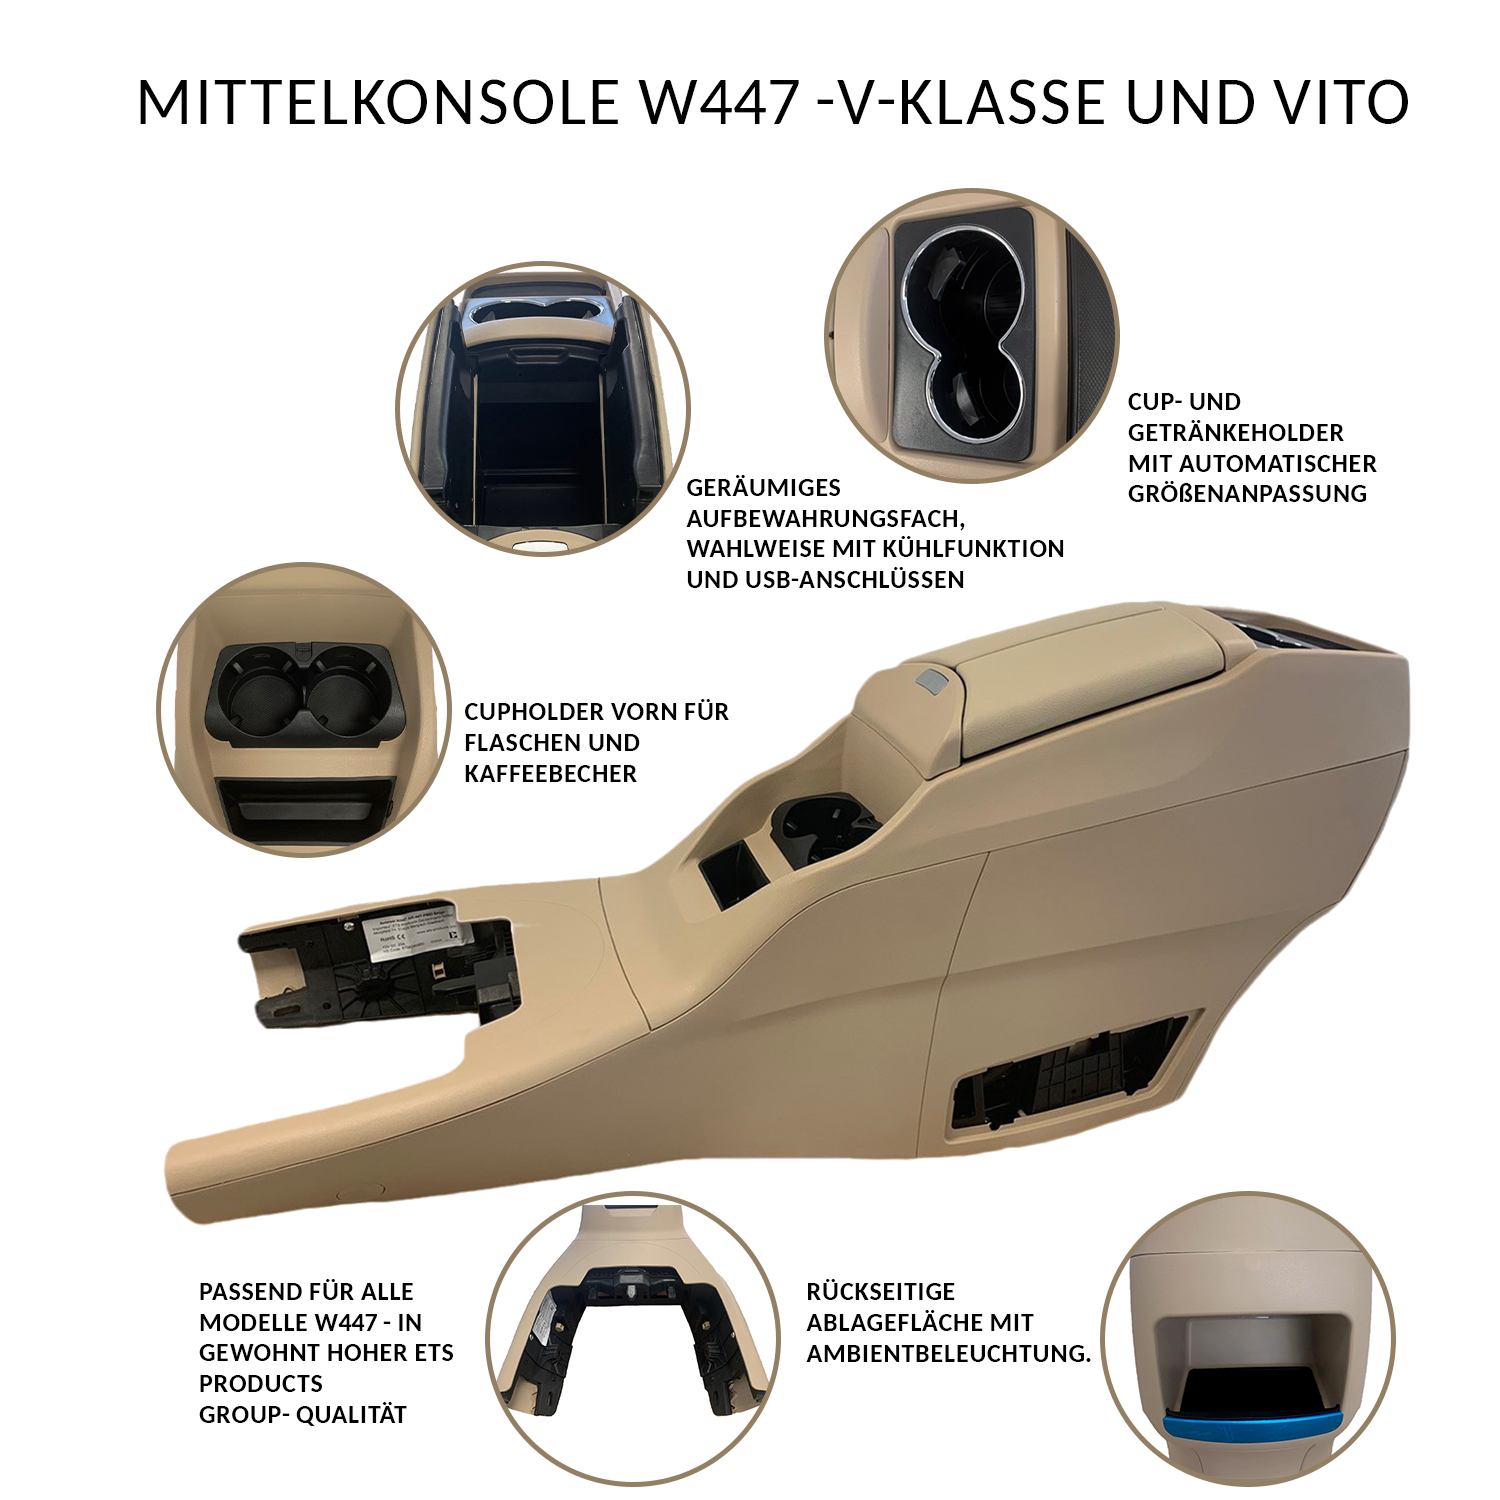 Staufach Mittelkonsole für Mercedes Vito / V-Klasse W447 mit LED  Beleuchtung USB und Induktion, Vito W447, Mercedes, Mittelkonsole, Interior